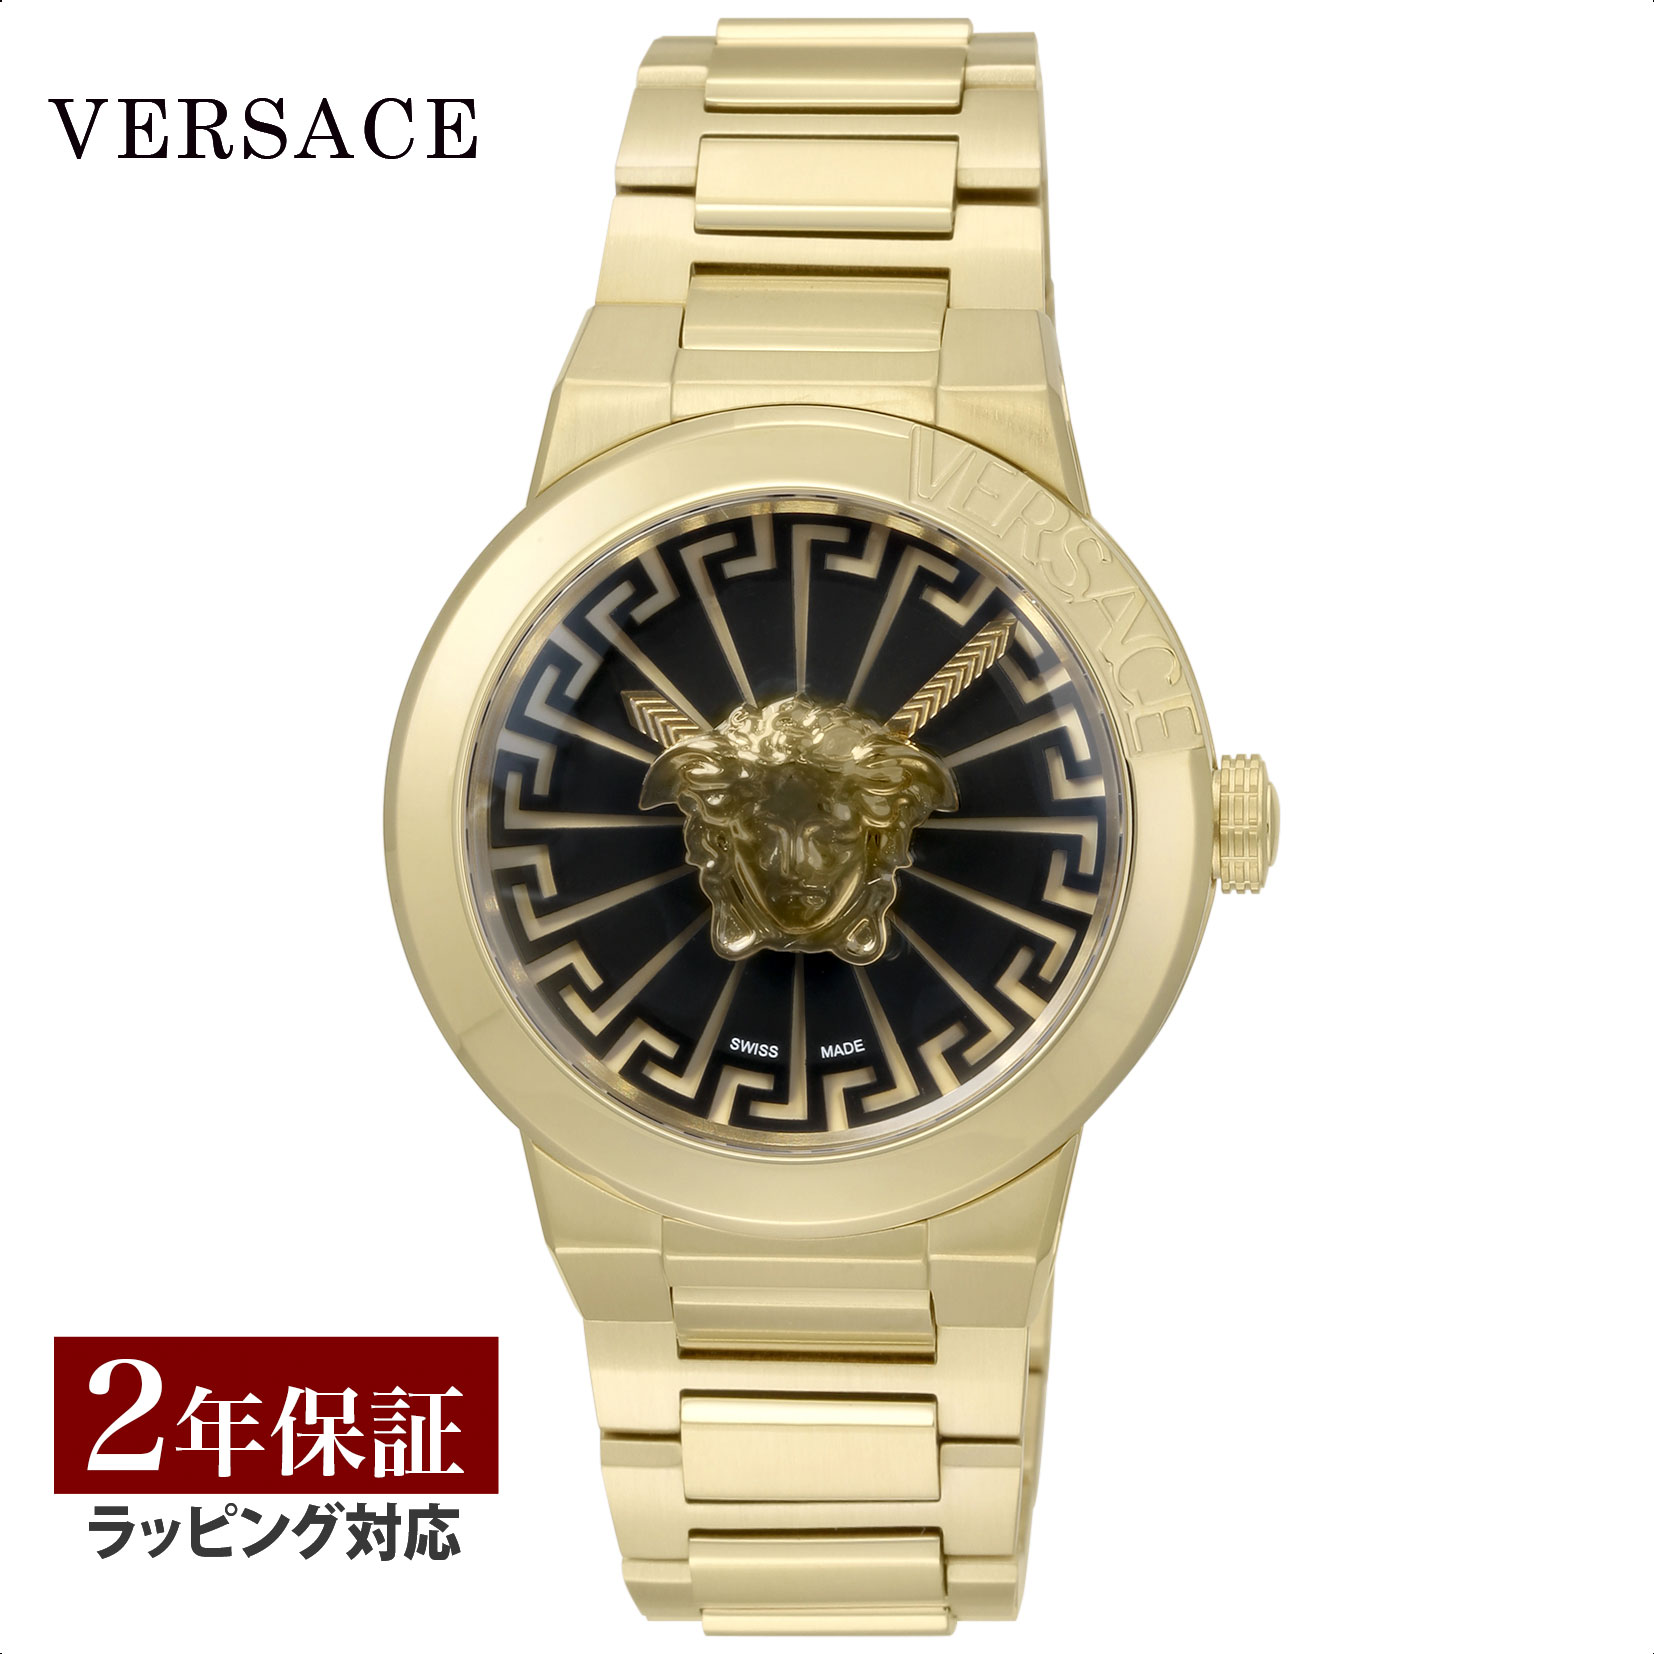 ヴェルサーチェ VERSACE メンズ 時計 メドゥーサ インフィニット Medusa Infinite クォーツ ブラック VE3F00522 腕時計 高級腕時計 ブランド